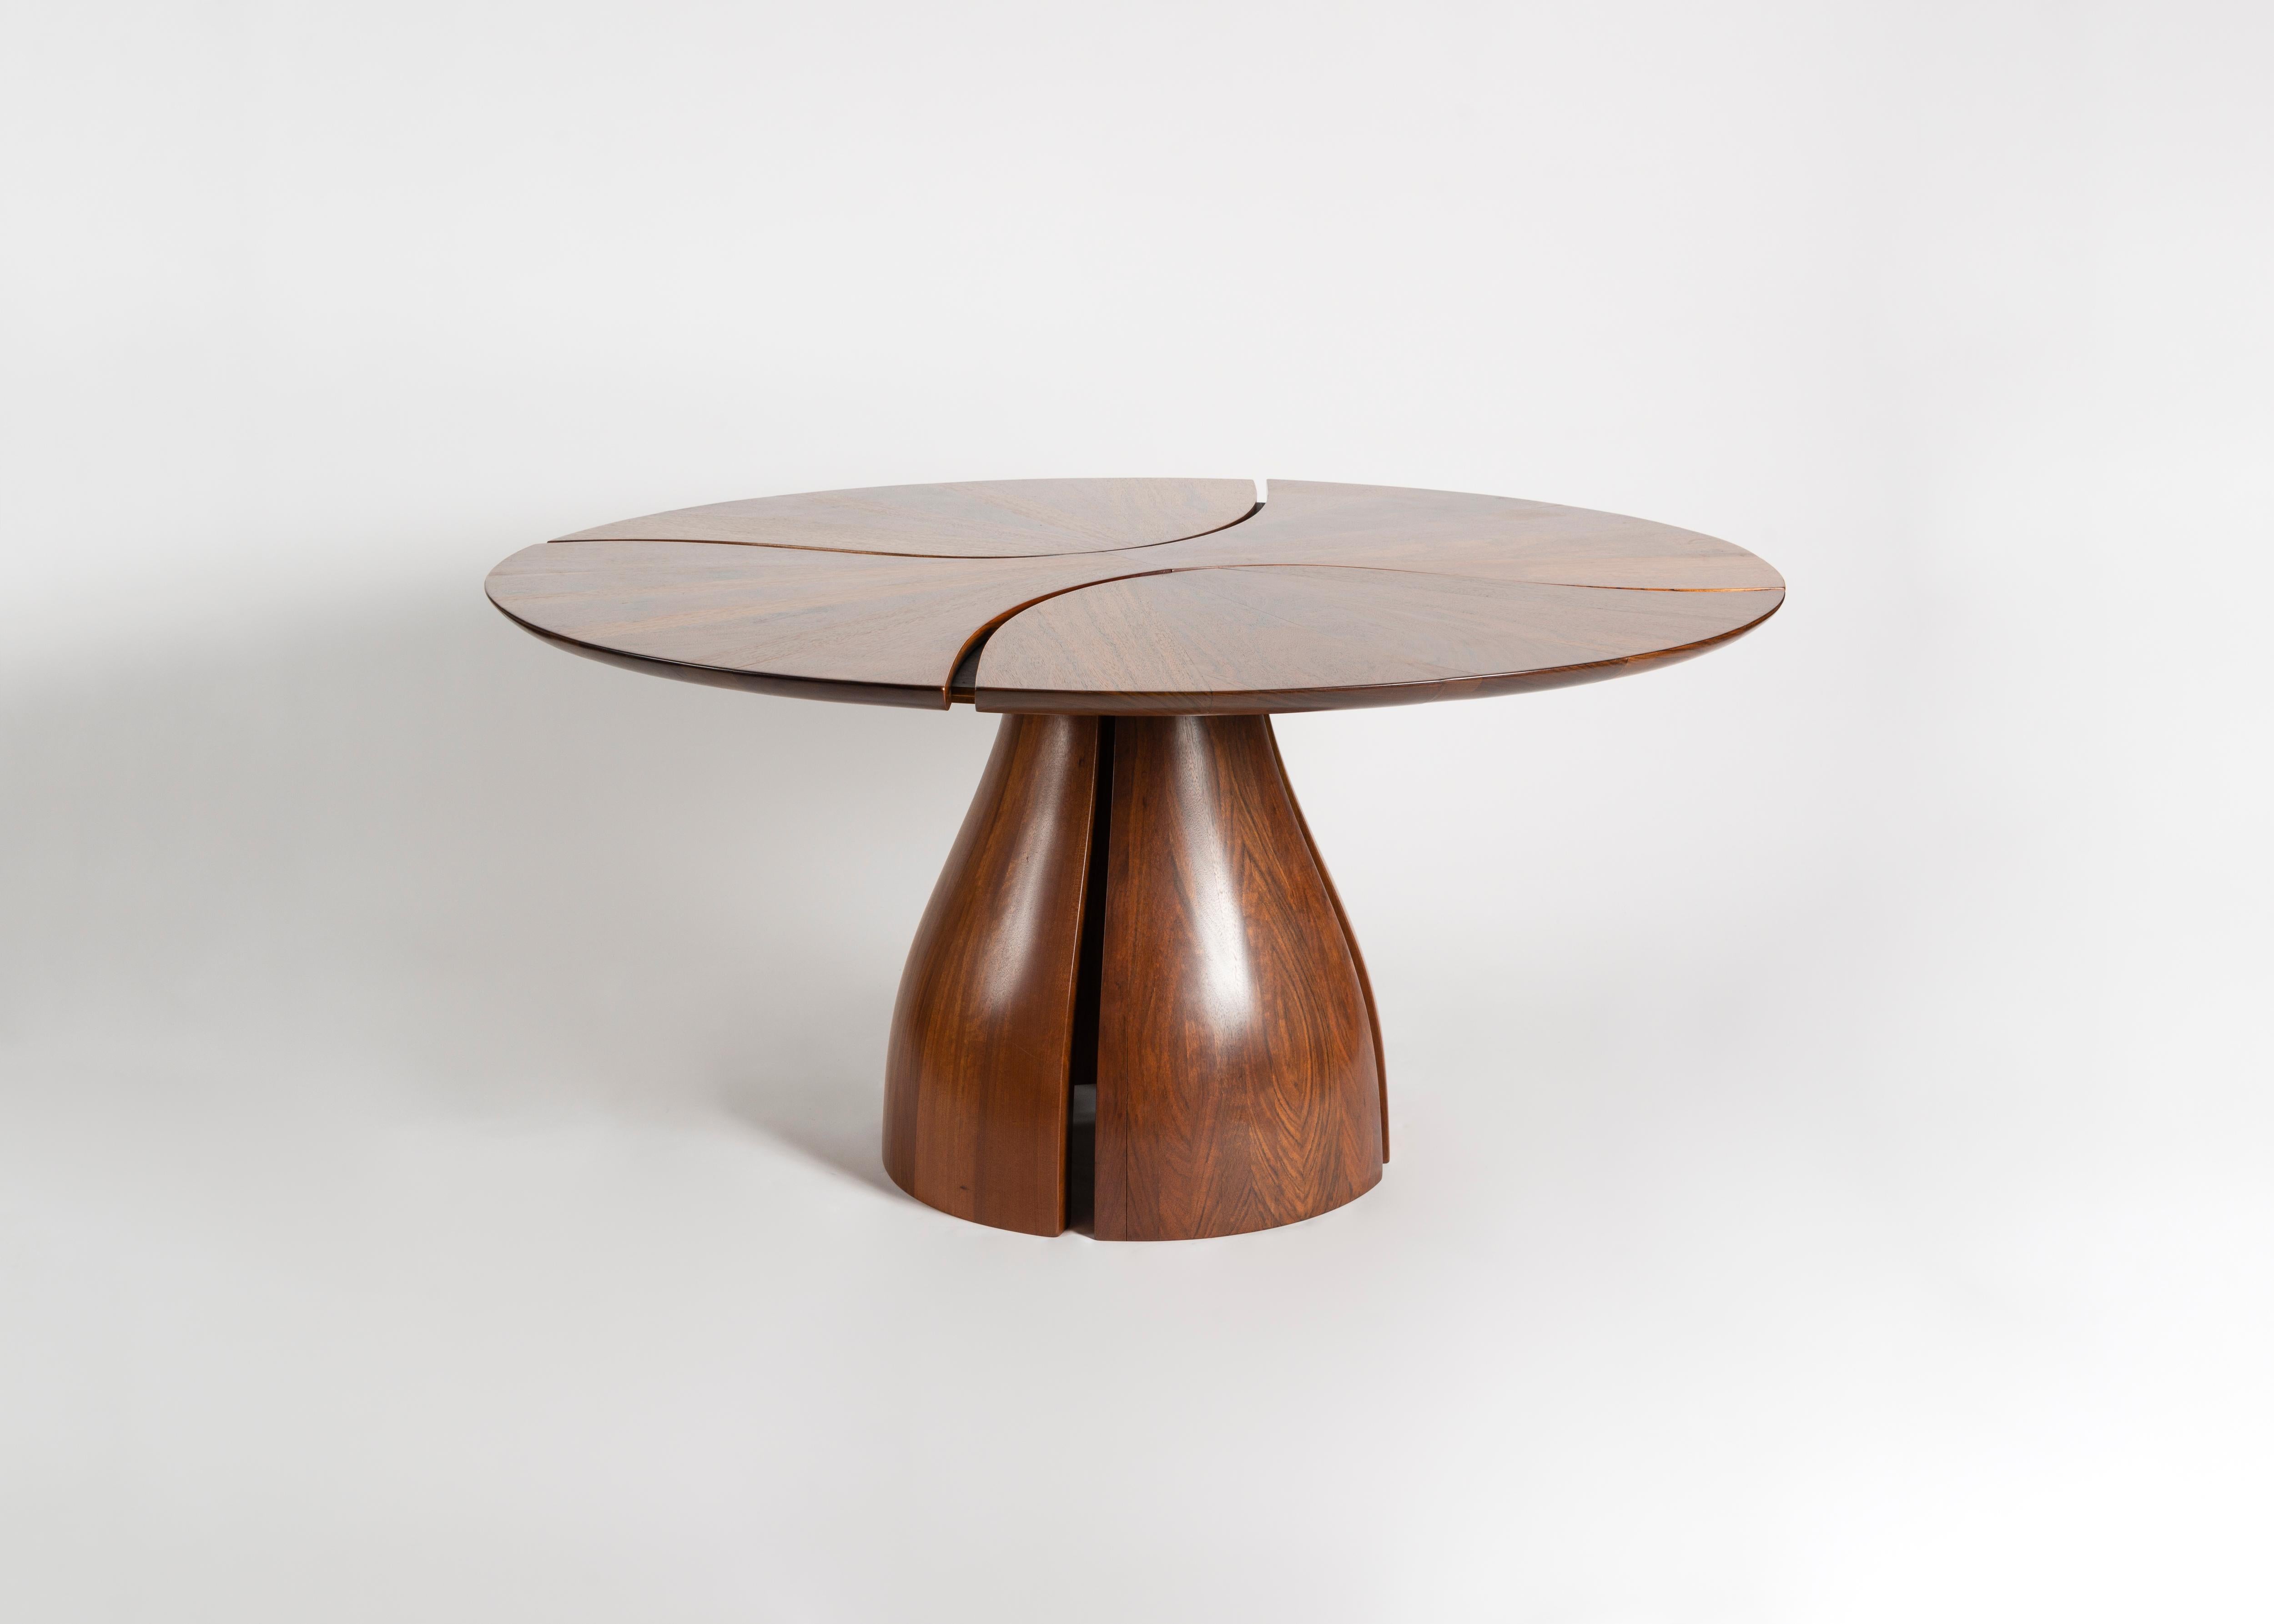 Questo tavolo scultoreo è composto da diversi pezzi di legno del Mozambico incastrati senza soluzione di continuità per creare la forma di un giglio. Come molte delle opere di Michael Coffey, il pezzo crea un contrasto tra la fluidità delle forme